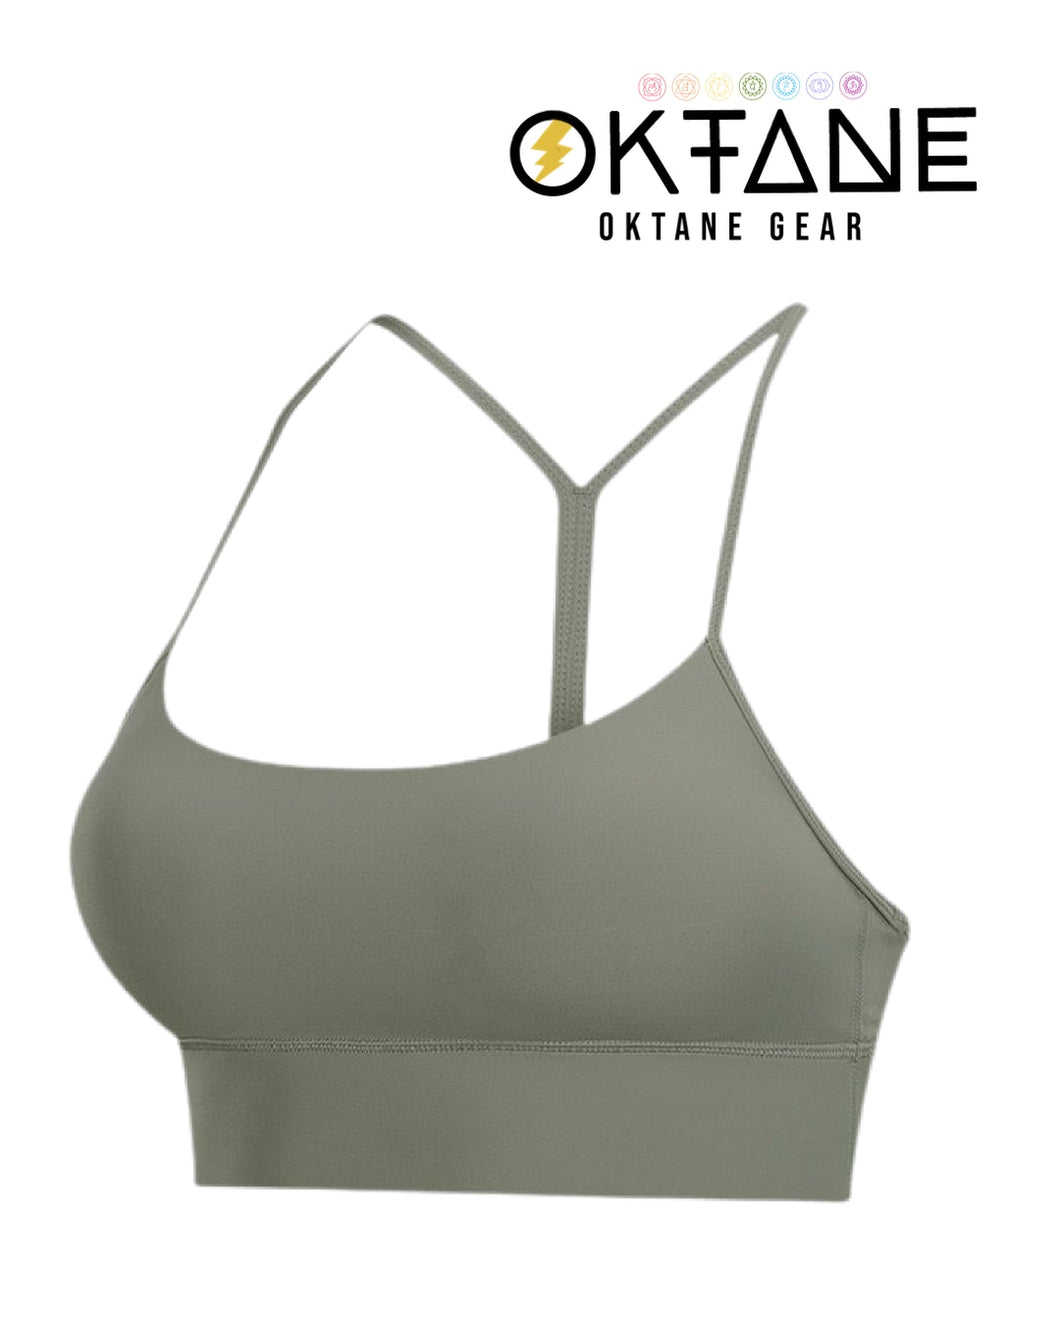 Oktane Gear Sport Bra Seamless Yoga Crop Top Workout Bra